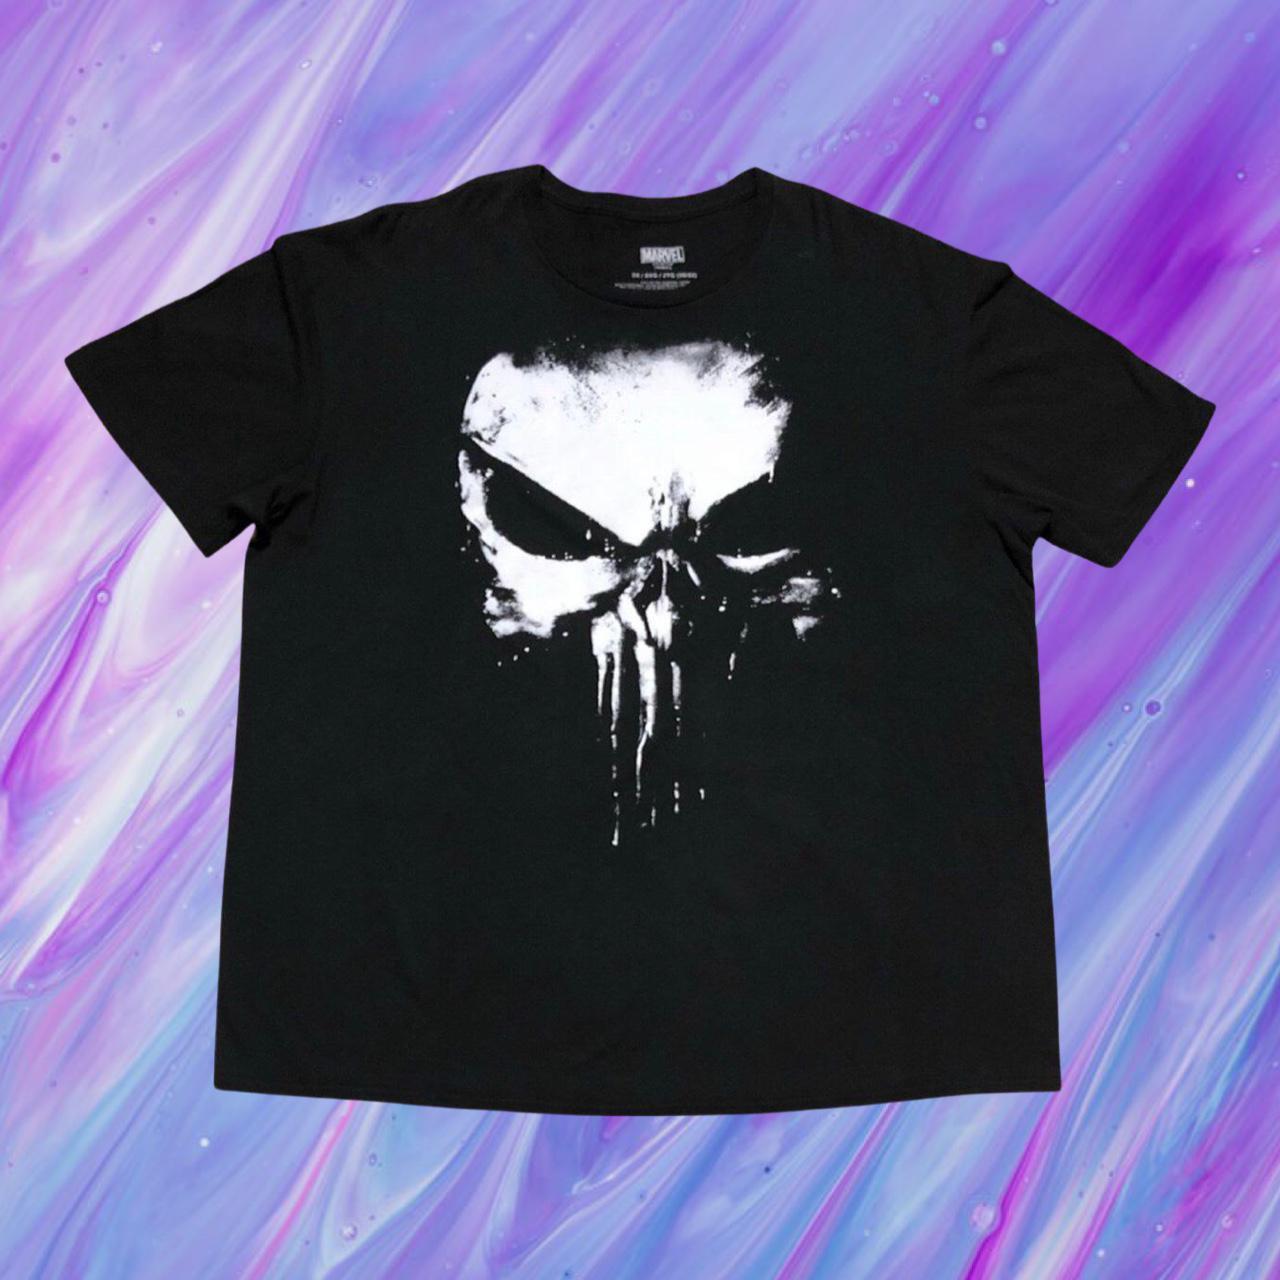 Product Image 1 - The Punisher Marvel T-shirt 

•Size